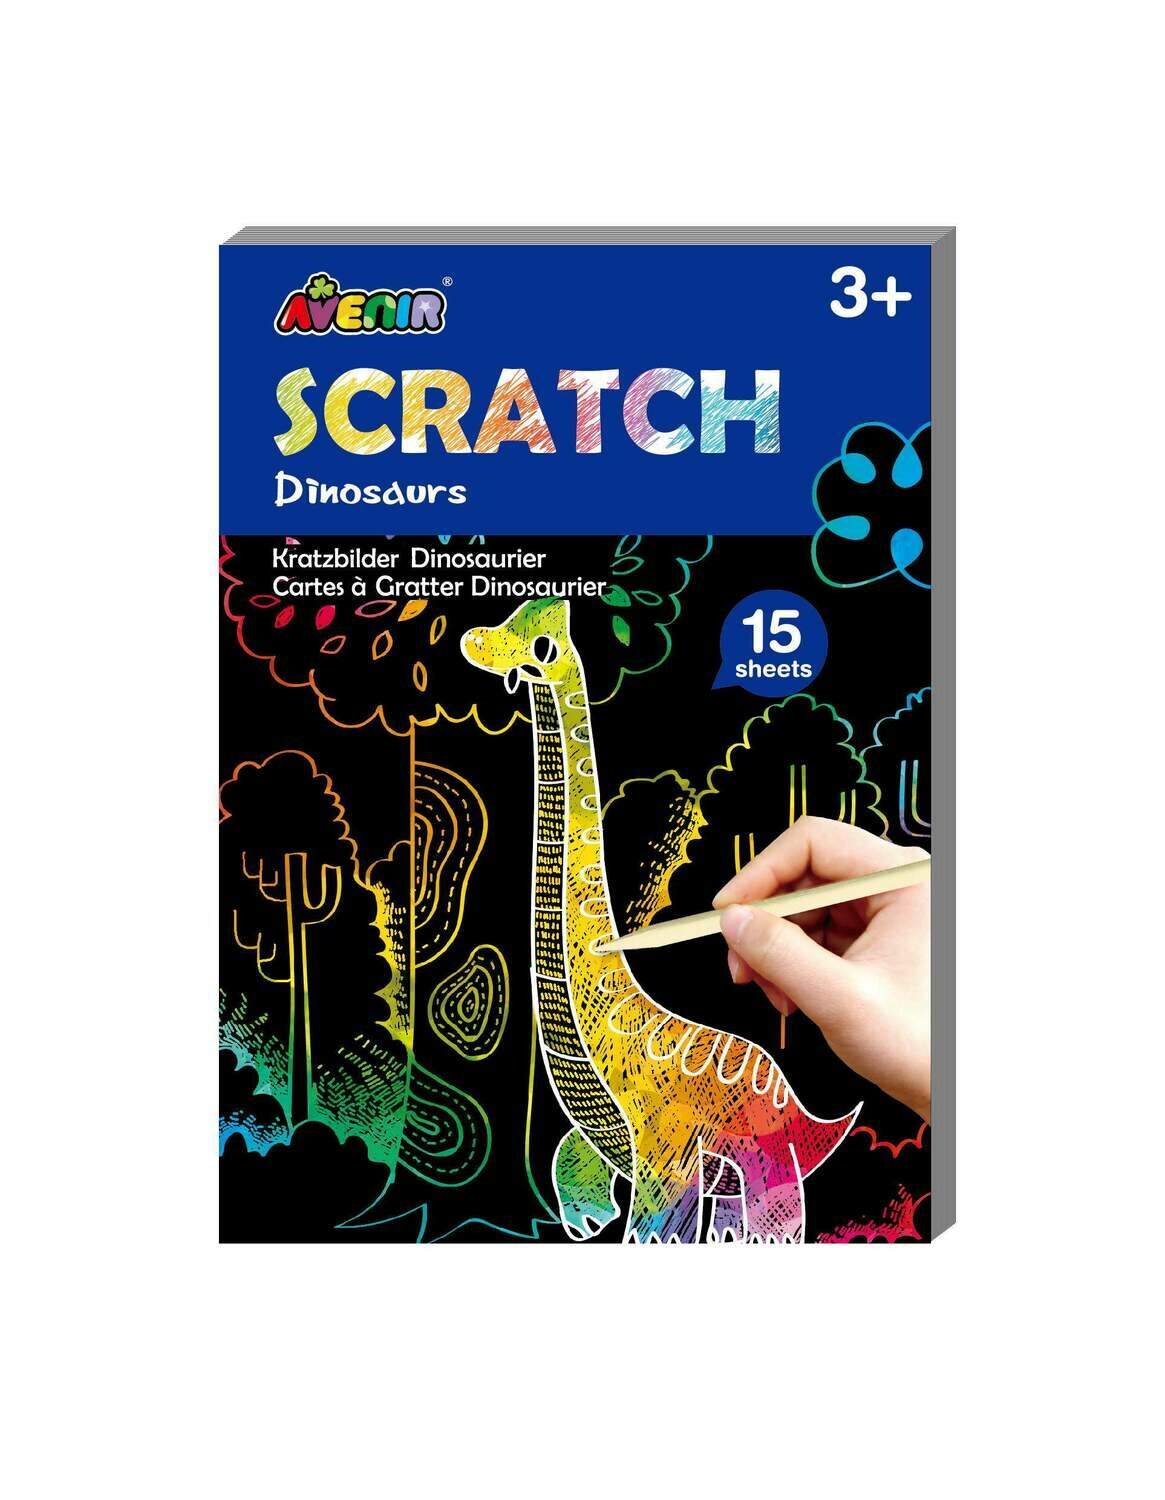 Mini Scratch Book - Dinosaurs